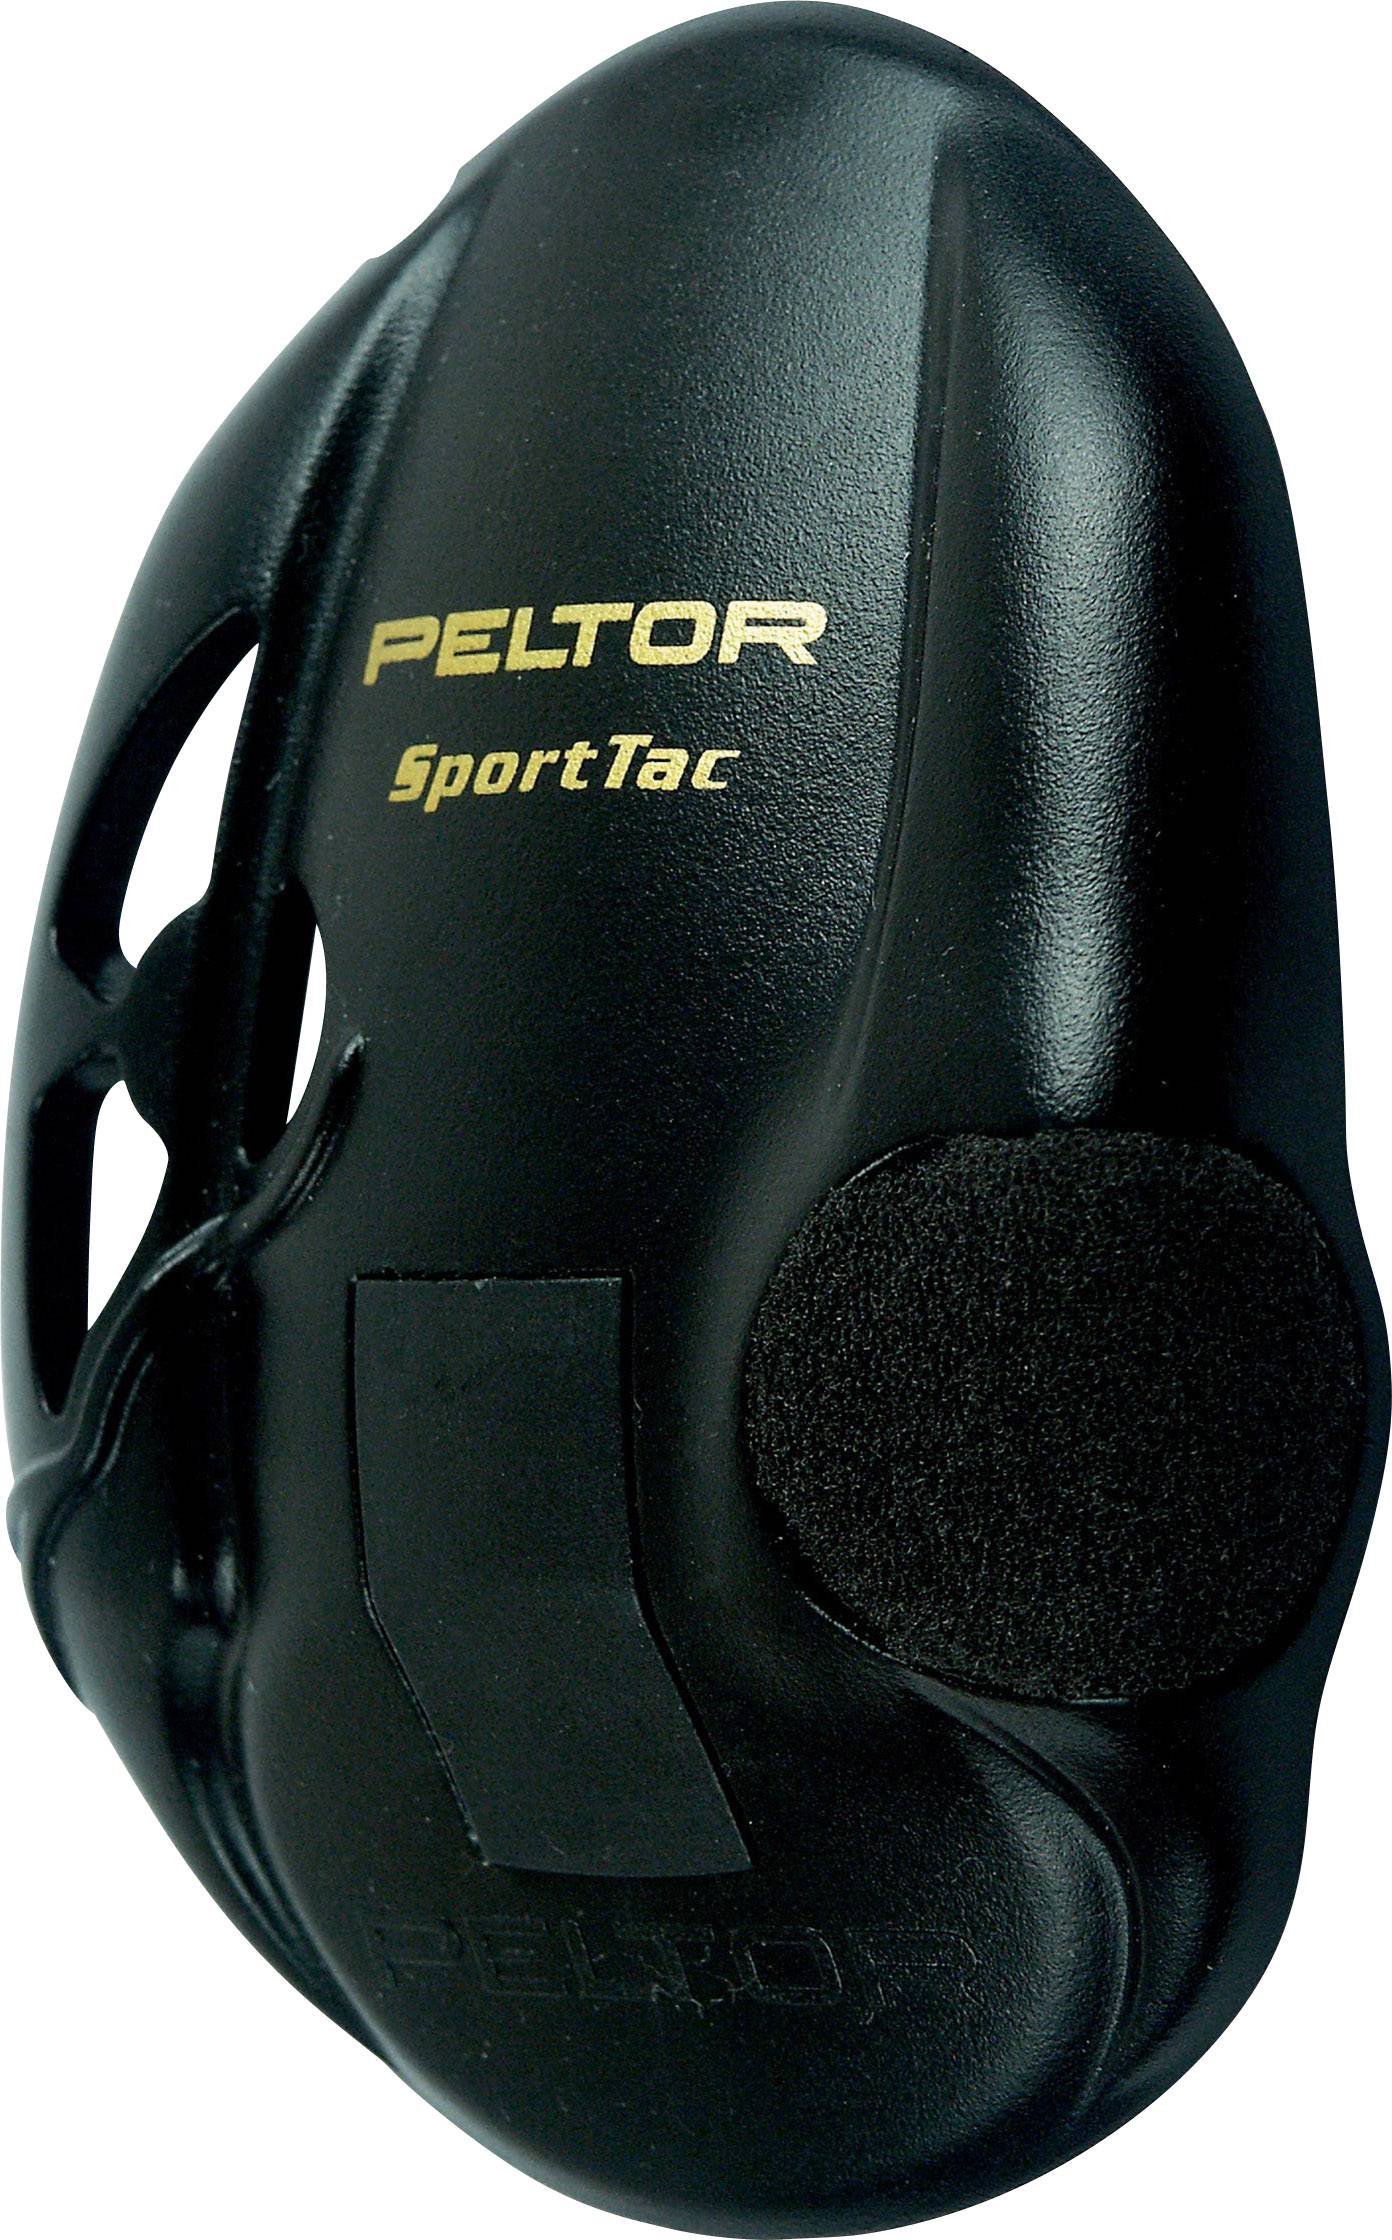 Buy 3M Peltor Black Shells for SportTac